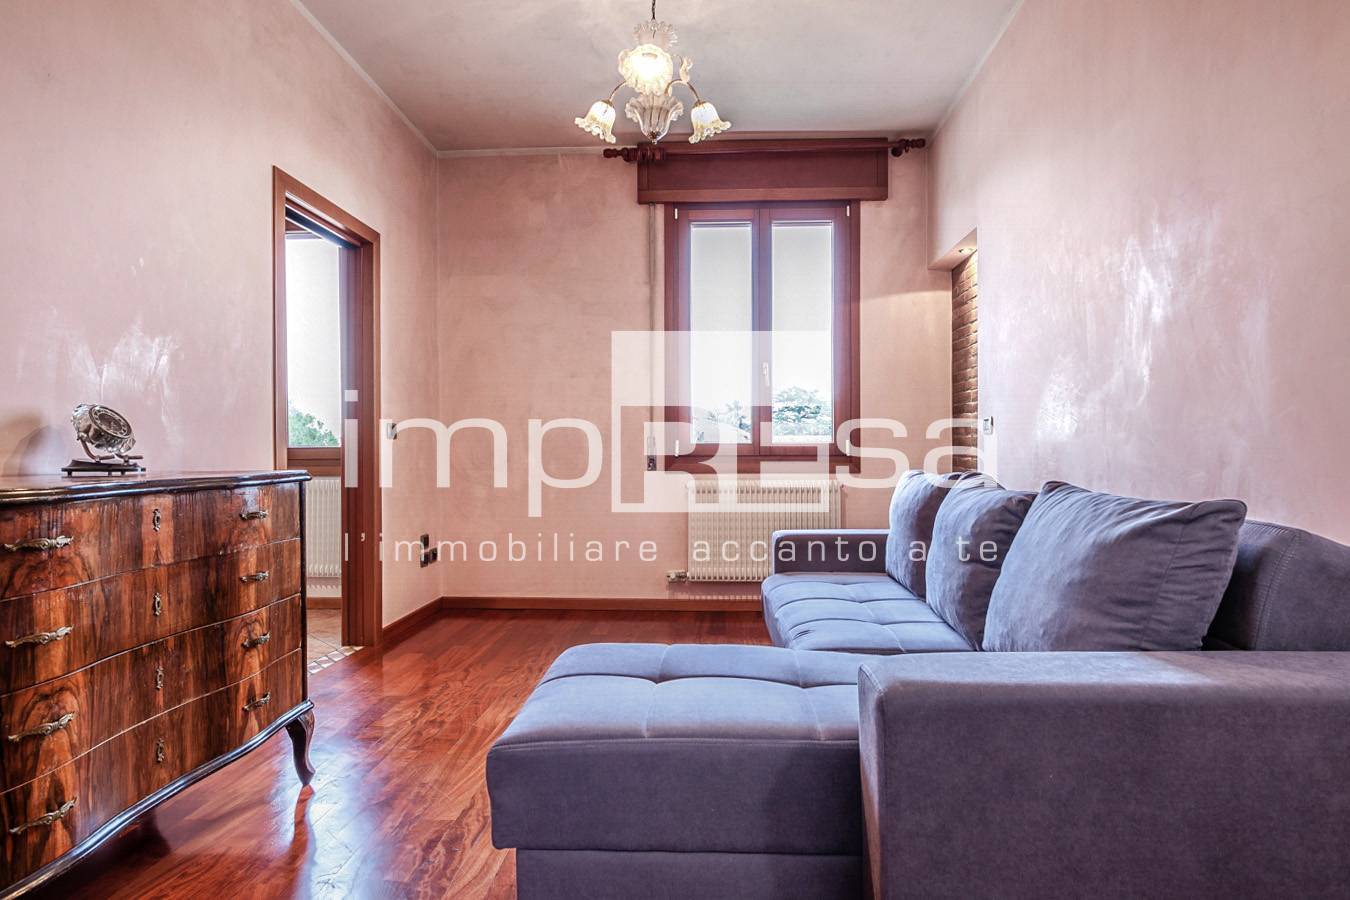 Appartamento in vendita a Treviso, 2 locali, zona Località: Fiera, prezzo € 124.000 | PortaleAgenzieImmobiliari.it